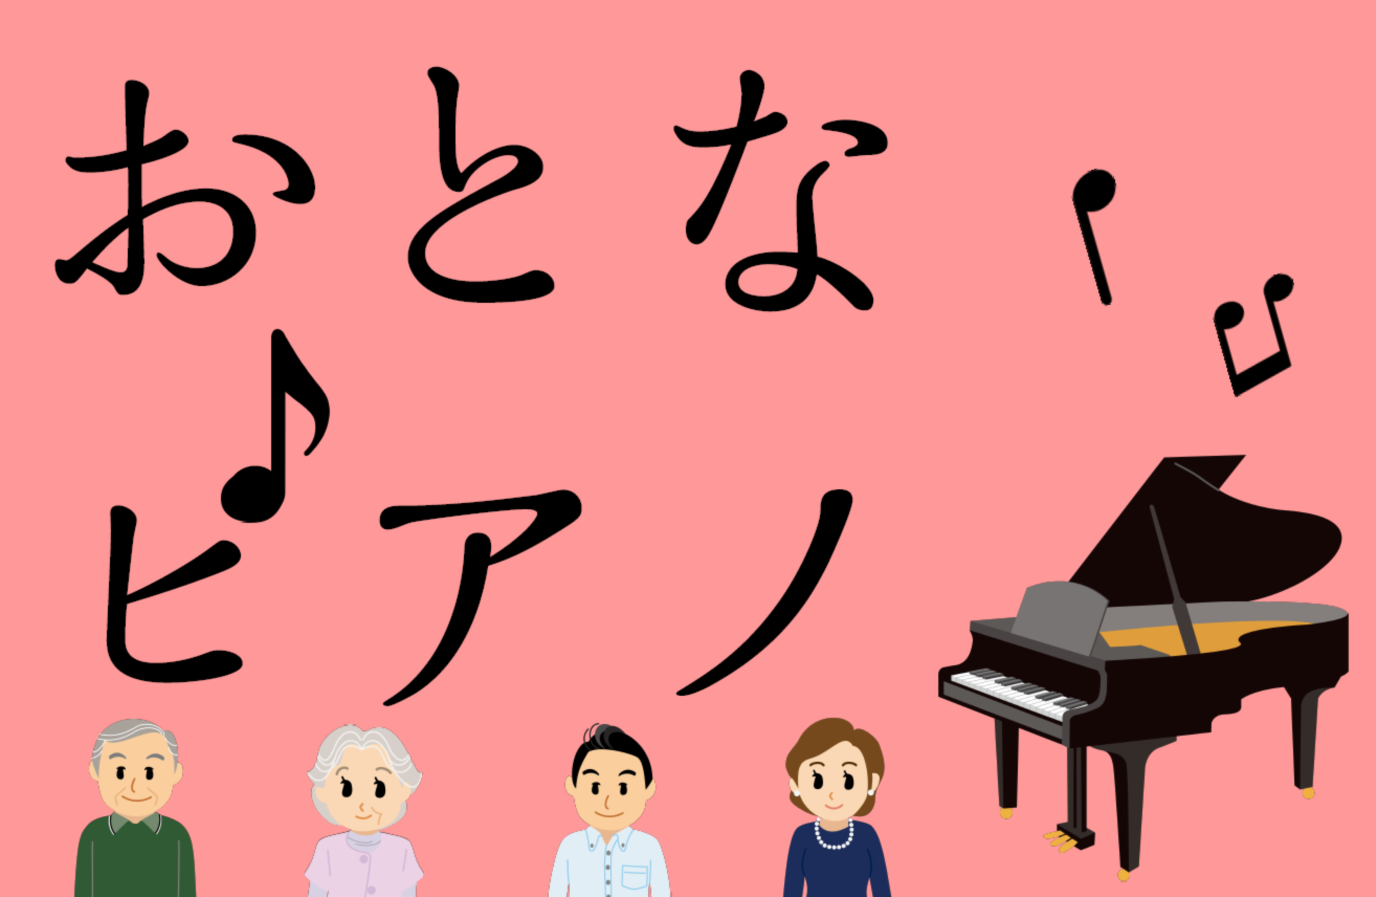 大人からの趣味 おとなピアノはじめませんか 広島県佐伯区ジ アウトレット広島1fにてピアノ教室開講 島村楽器 The Outlets Hiroshima店